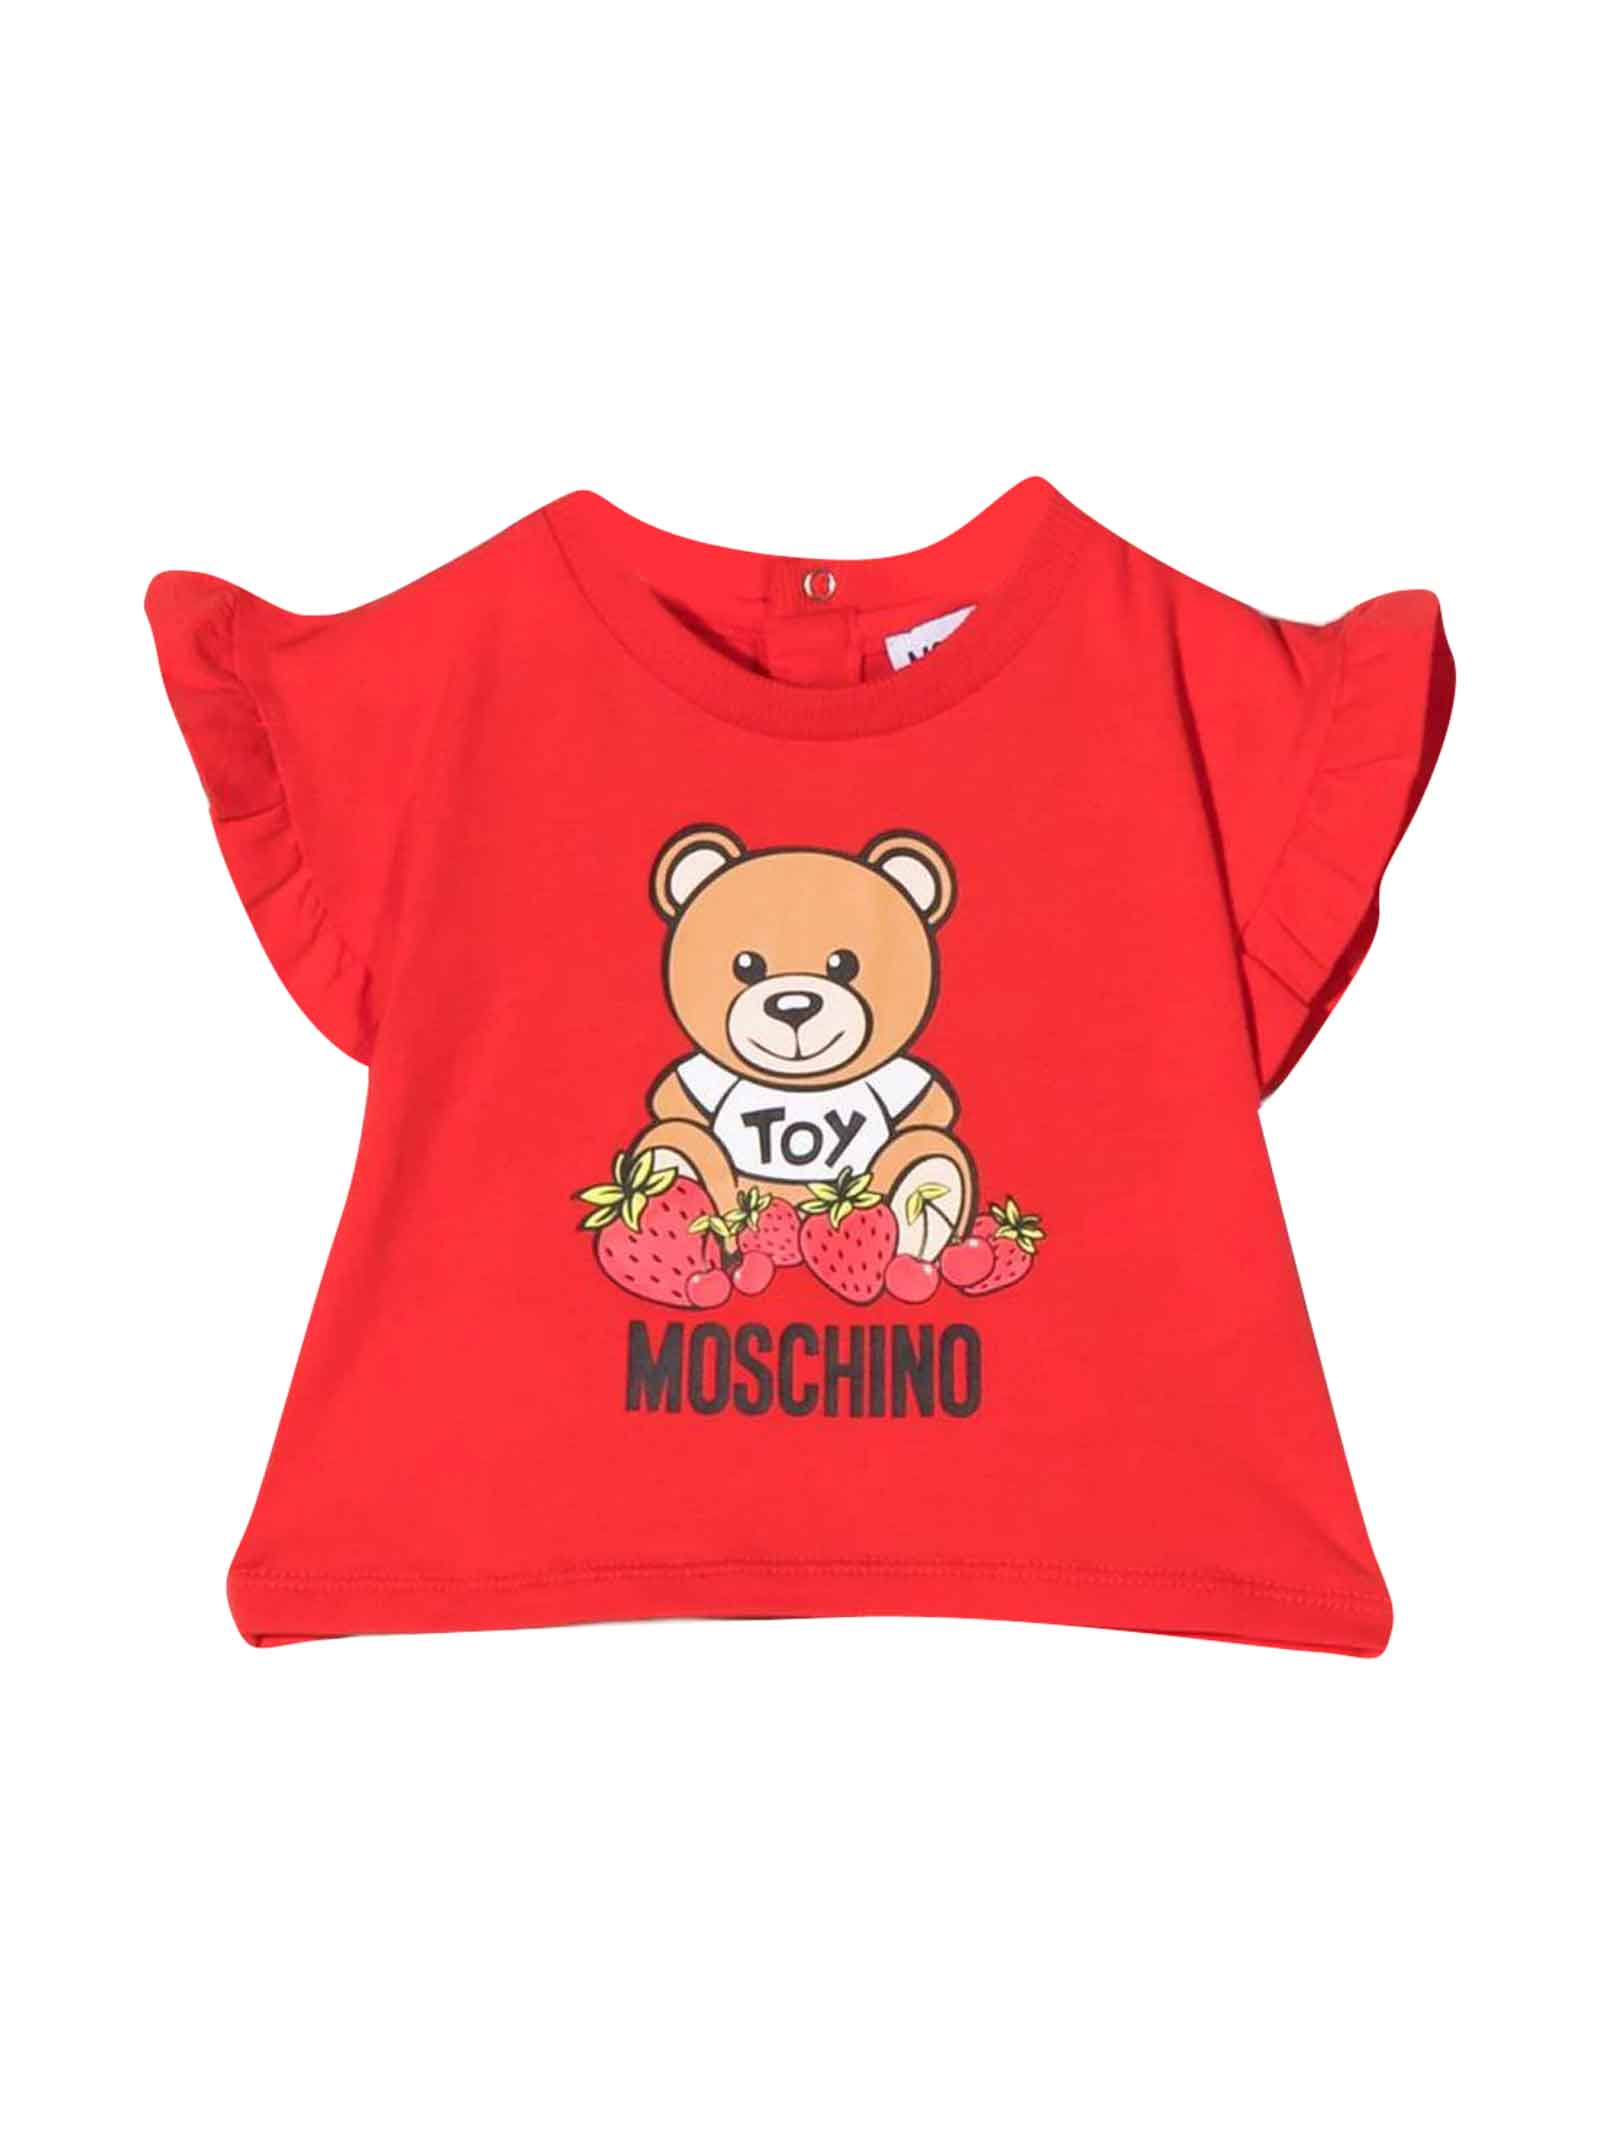 Moschino Unisex Red Baby T-shirt